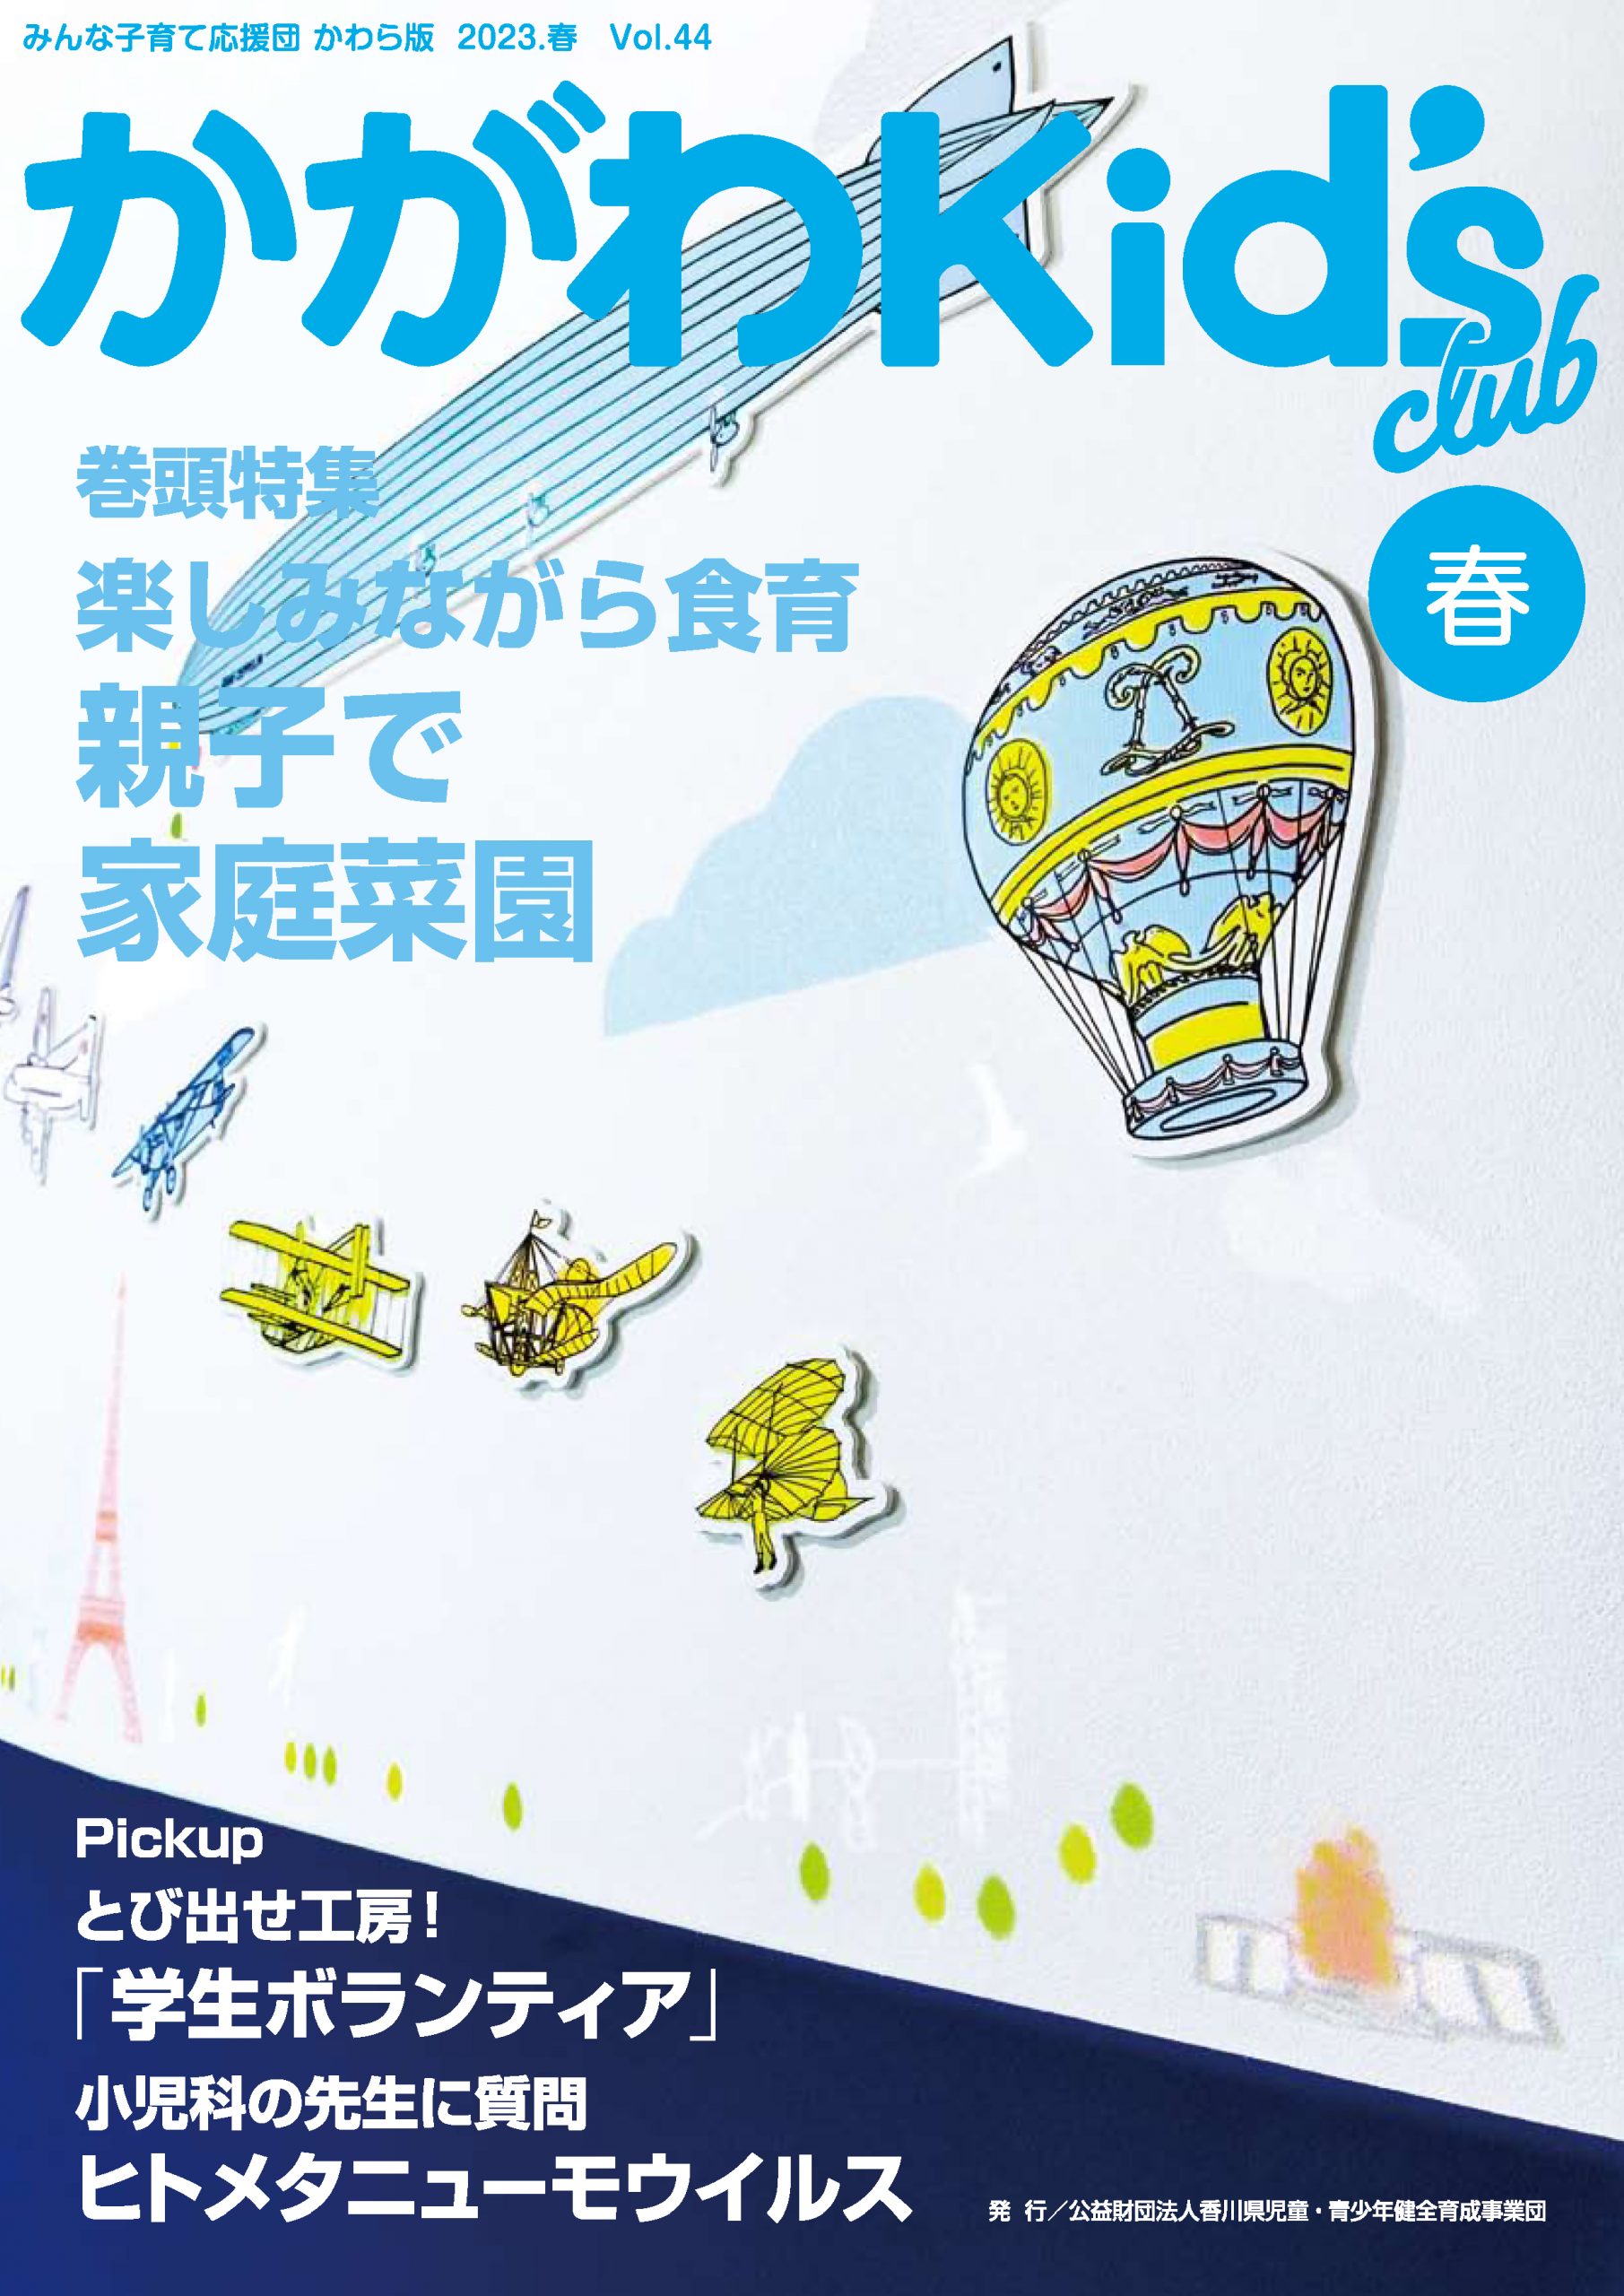 かがわKid's club 2023春 Vol.44=